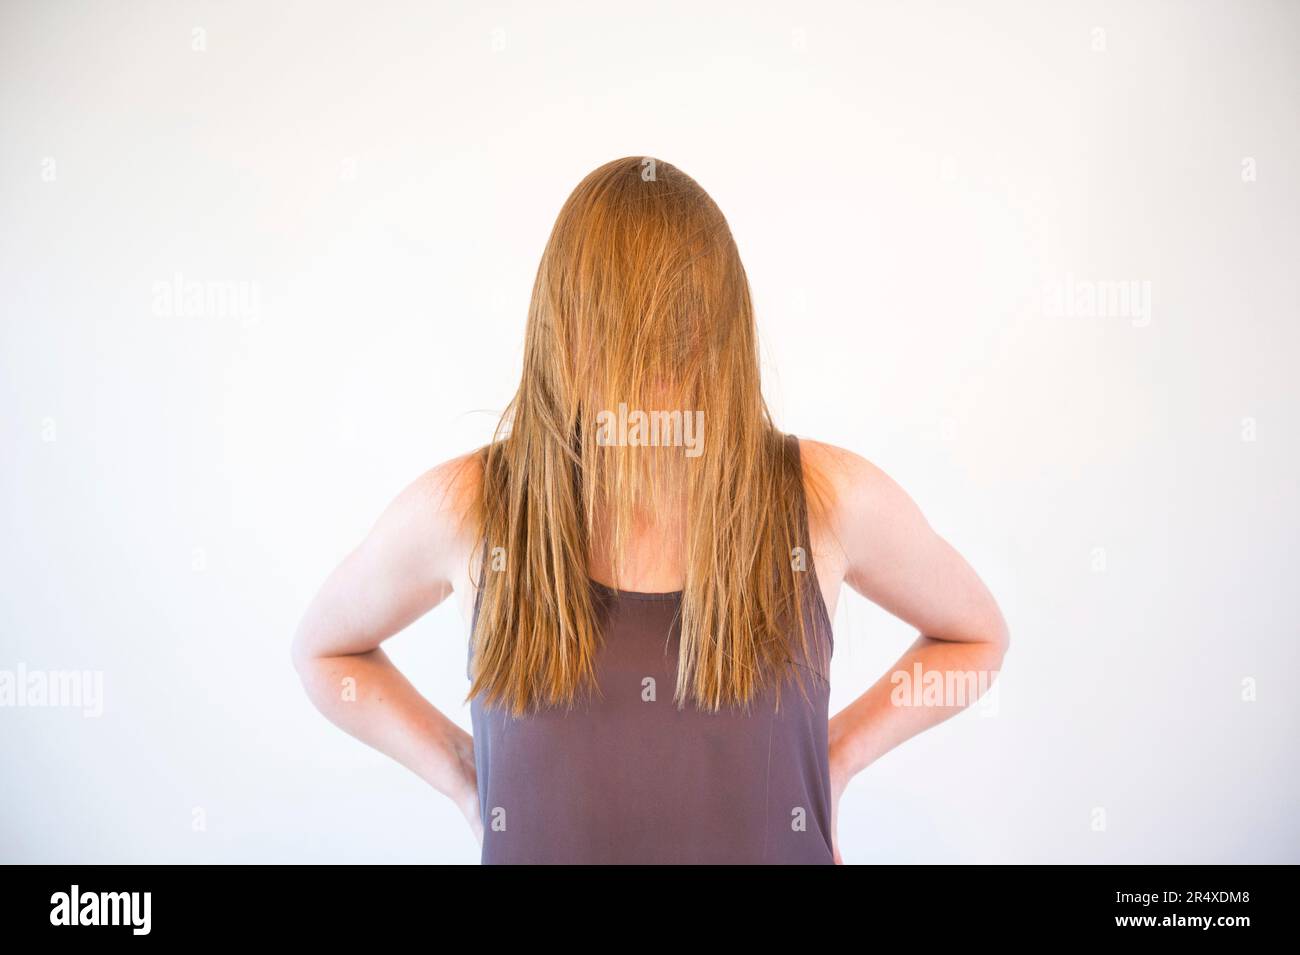 Les longs cheveux de la jeune femme obscurcissent son visage ; Lincoln, Nebraska, États-Unis d'Amérique Banque D'Images